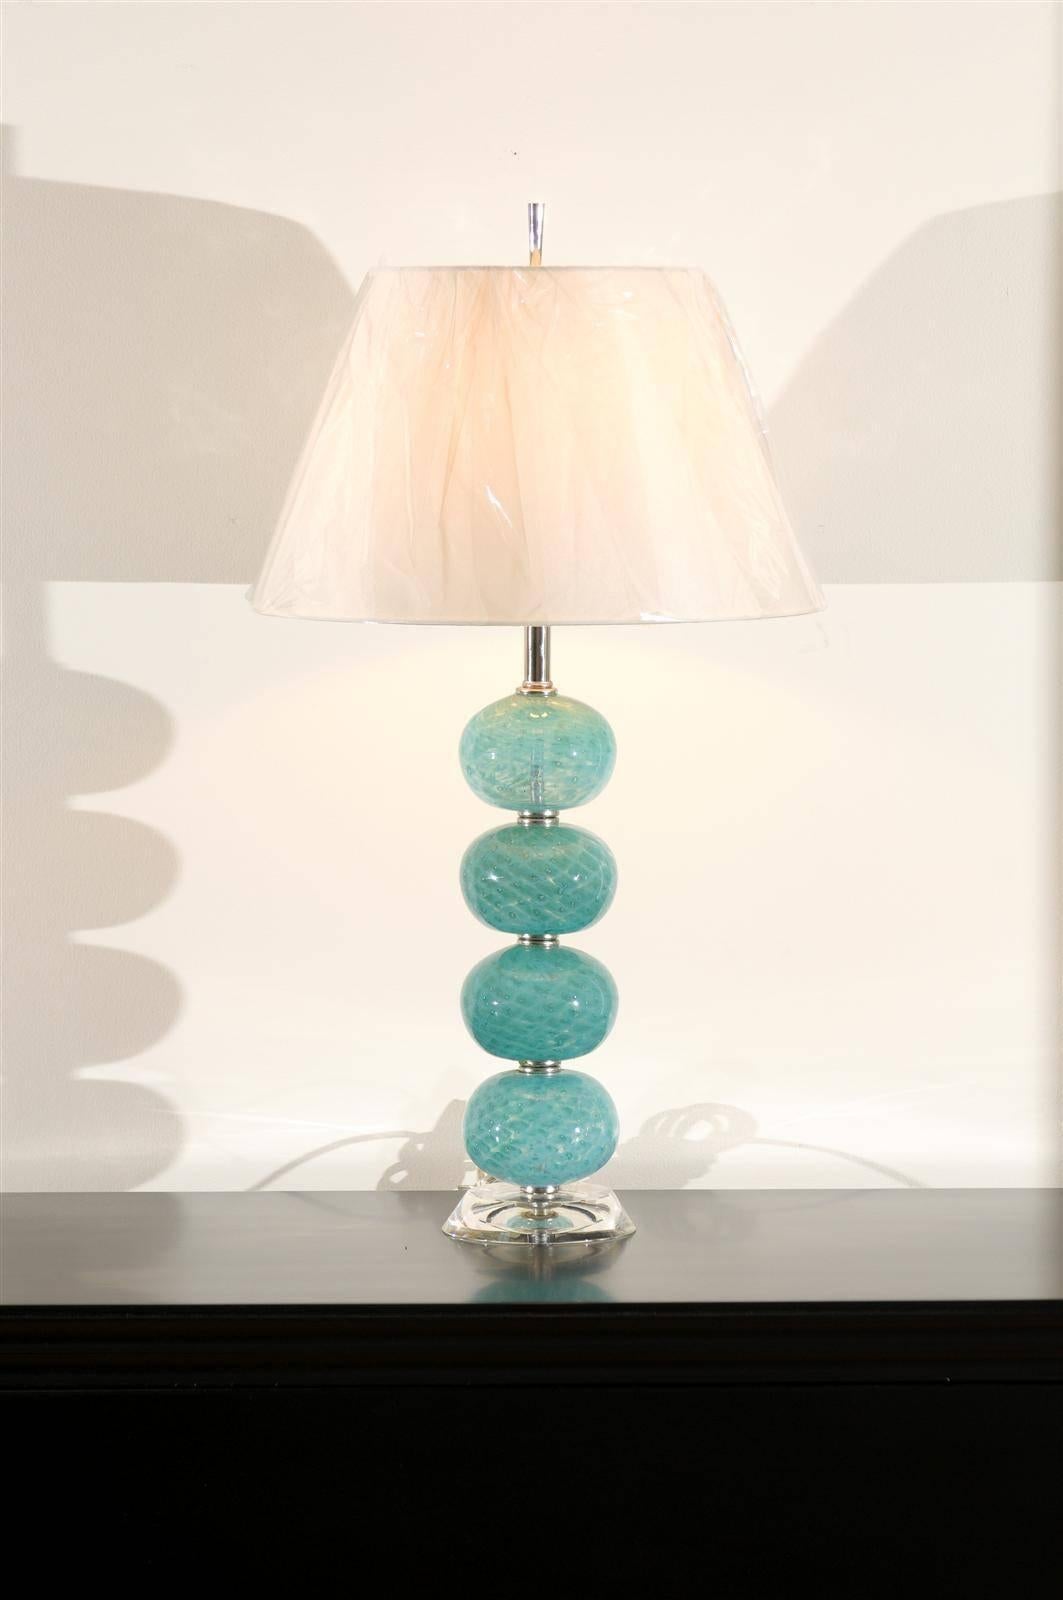 Ein wunderschönes Paar alter Murano-Lampen, um 1970. Bestehend aus einer Reihe mundgeblasener Glaskugeln, die mit Hilfe von Umkehrfarben in Farbe und Muster gebracht werden. Auf dem originalen dicken Lucite-Sockel. Exquisiter Schmuck!